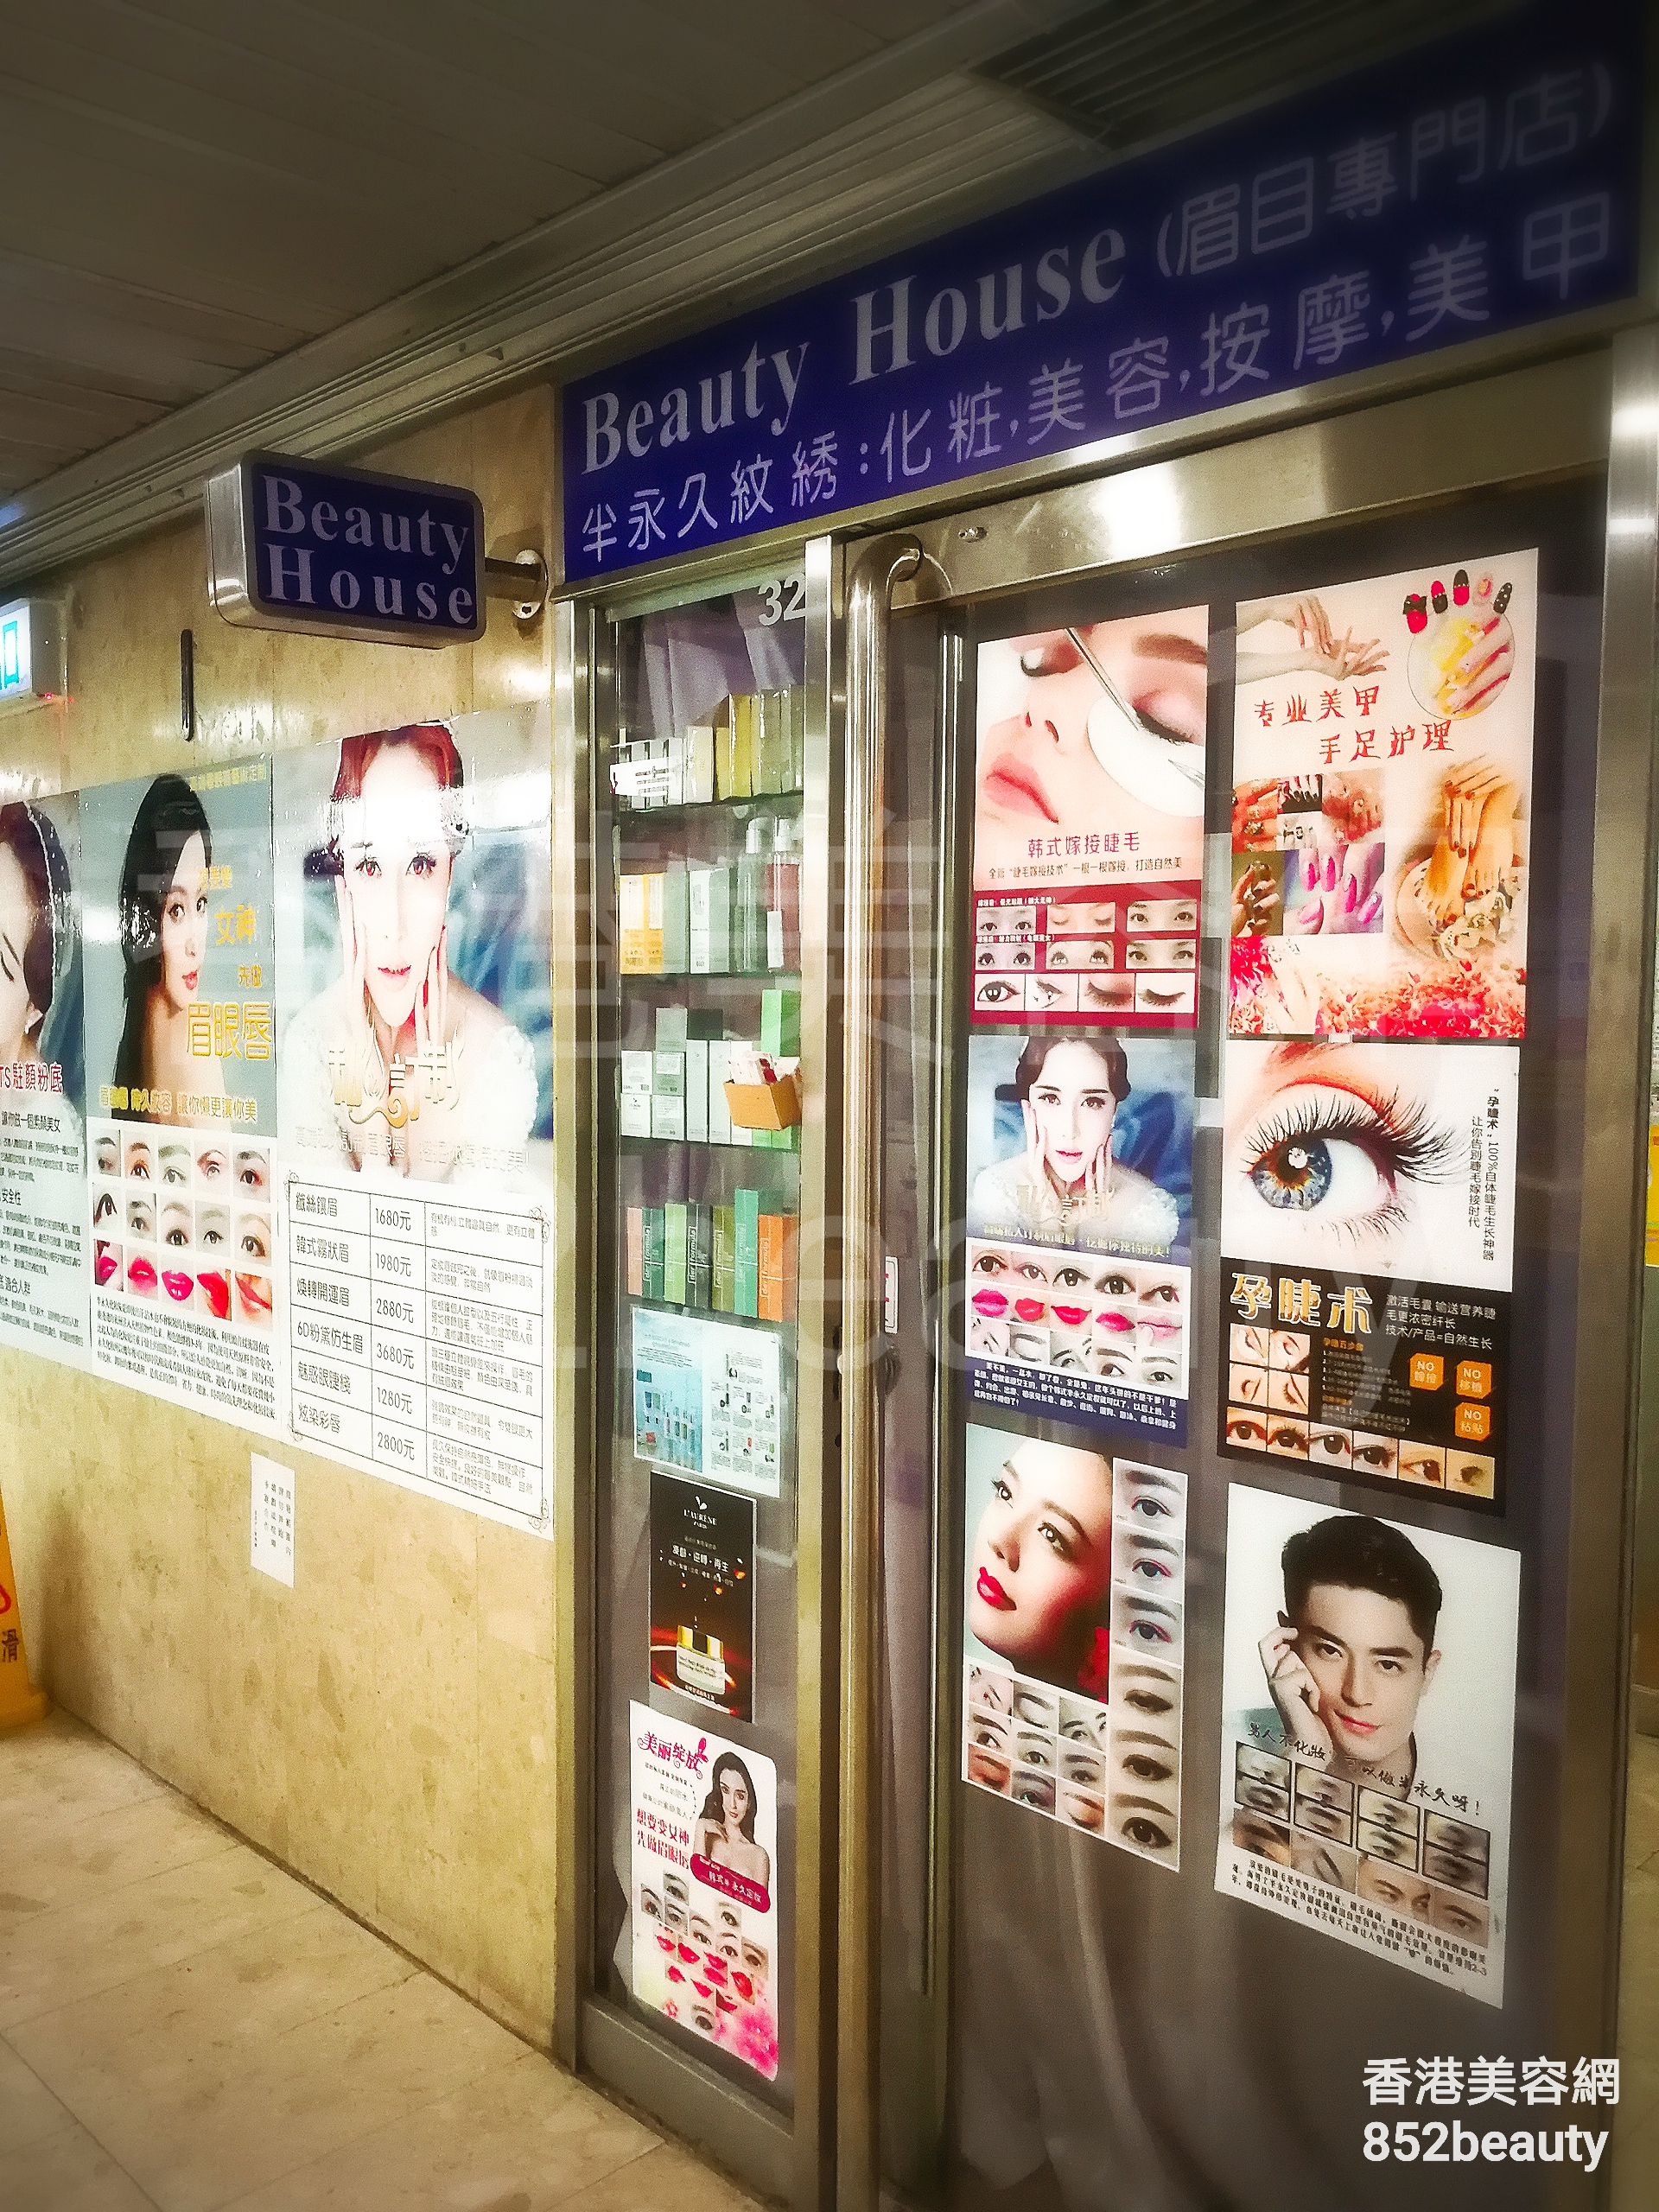 按摩/SPA: Beauty house (眉目專門店)